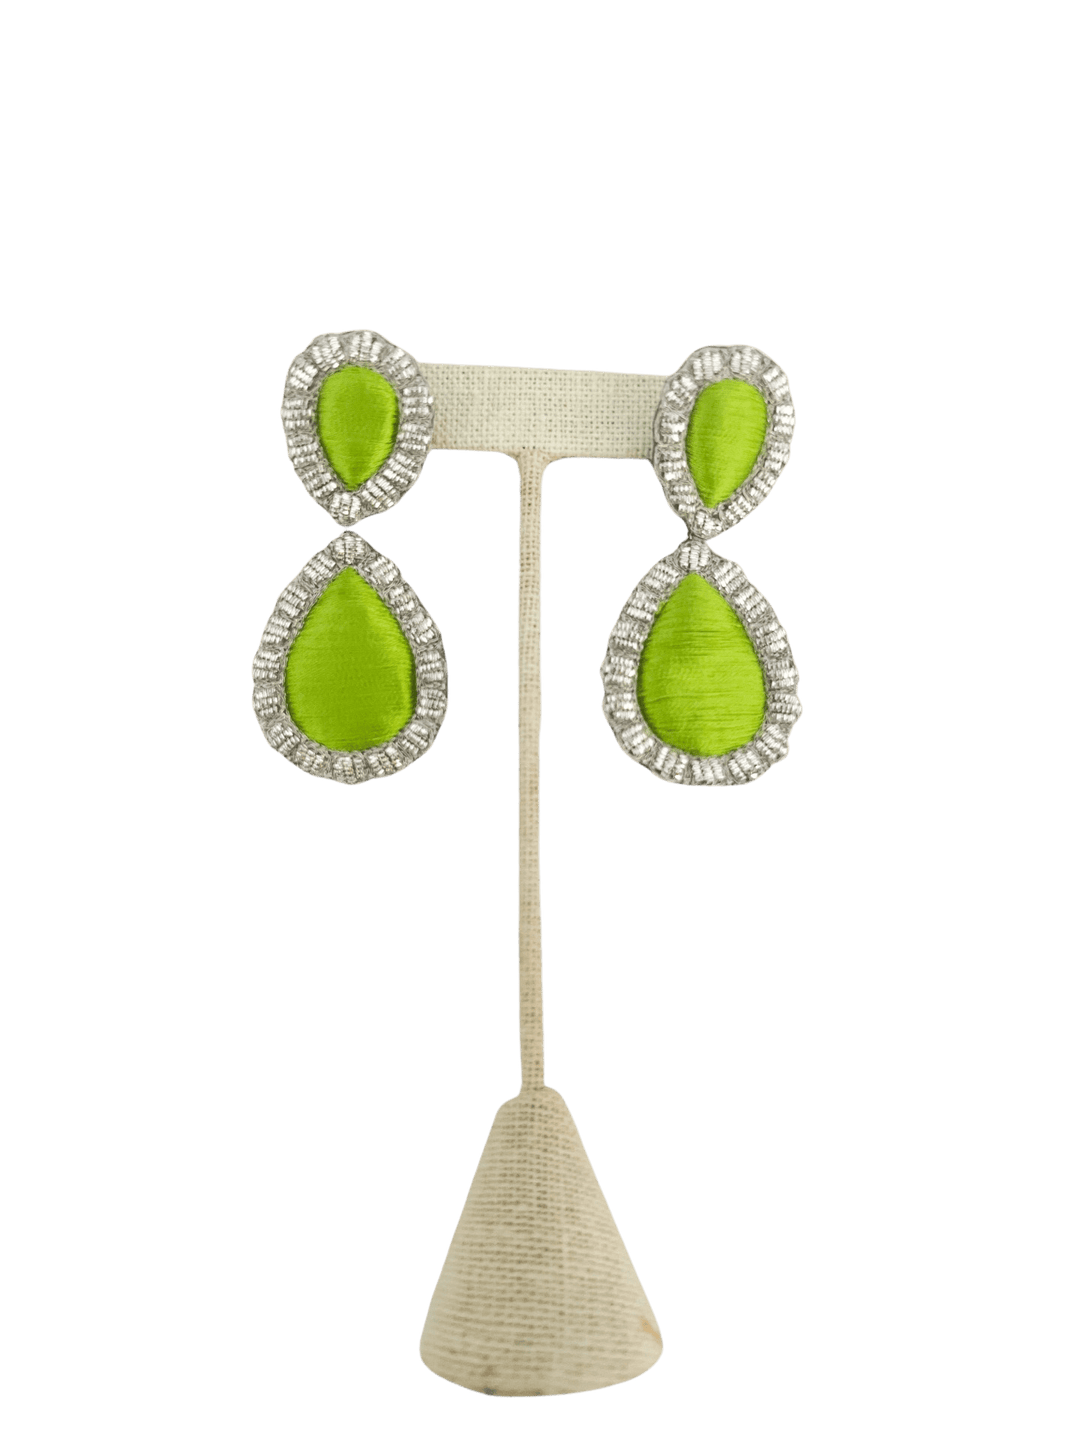 Sophia203 Jewelry Lime Sophia 203 Jewelry | Giant Gem Earrings